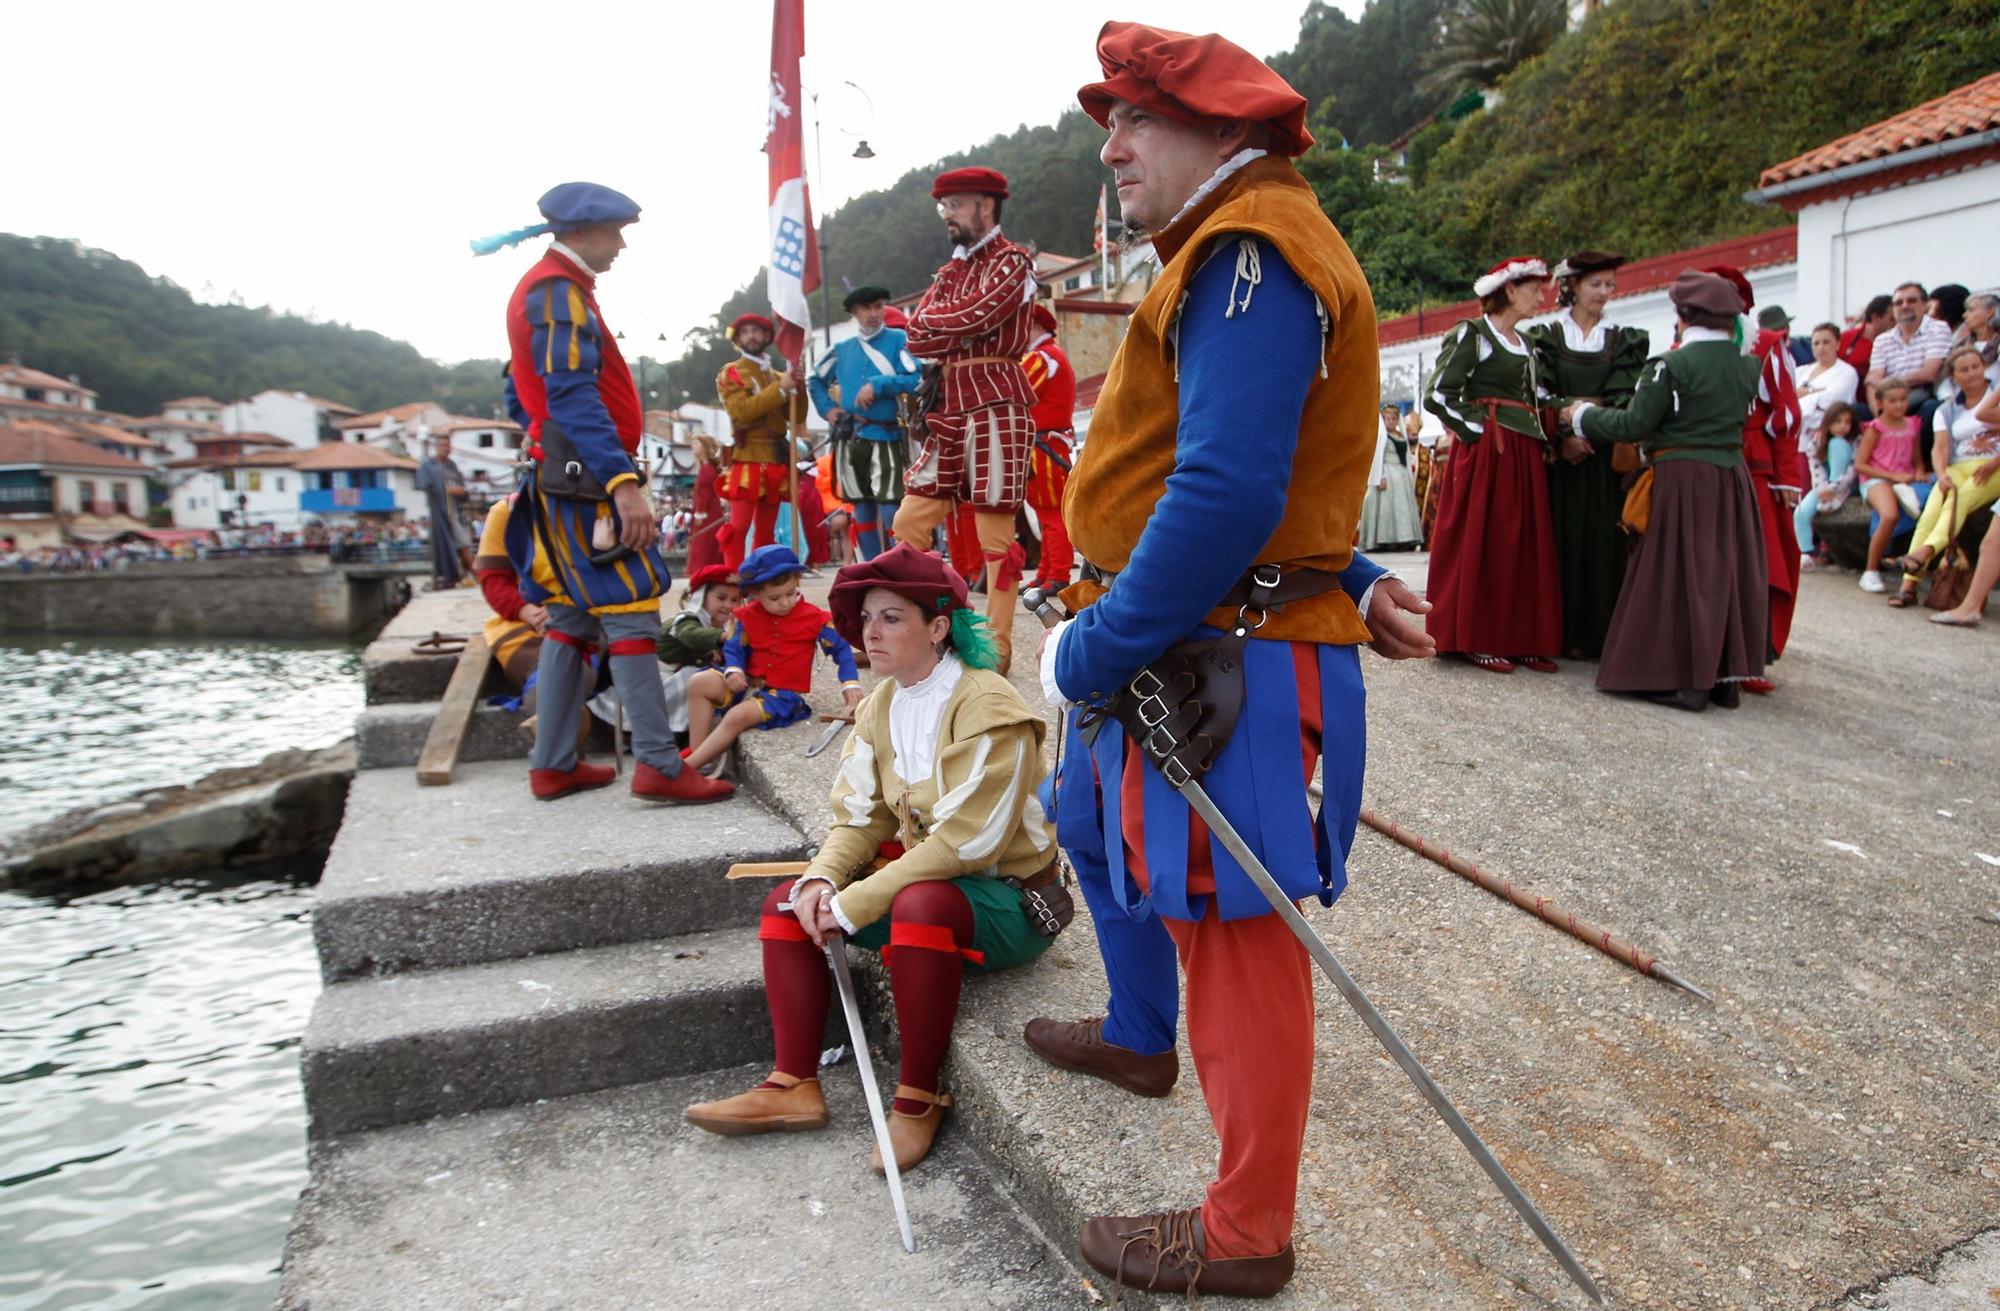 El desembarco de Carlos V en Tazones, así es la gran recreación histórica de Villaviciosa